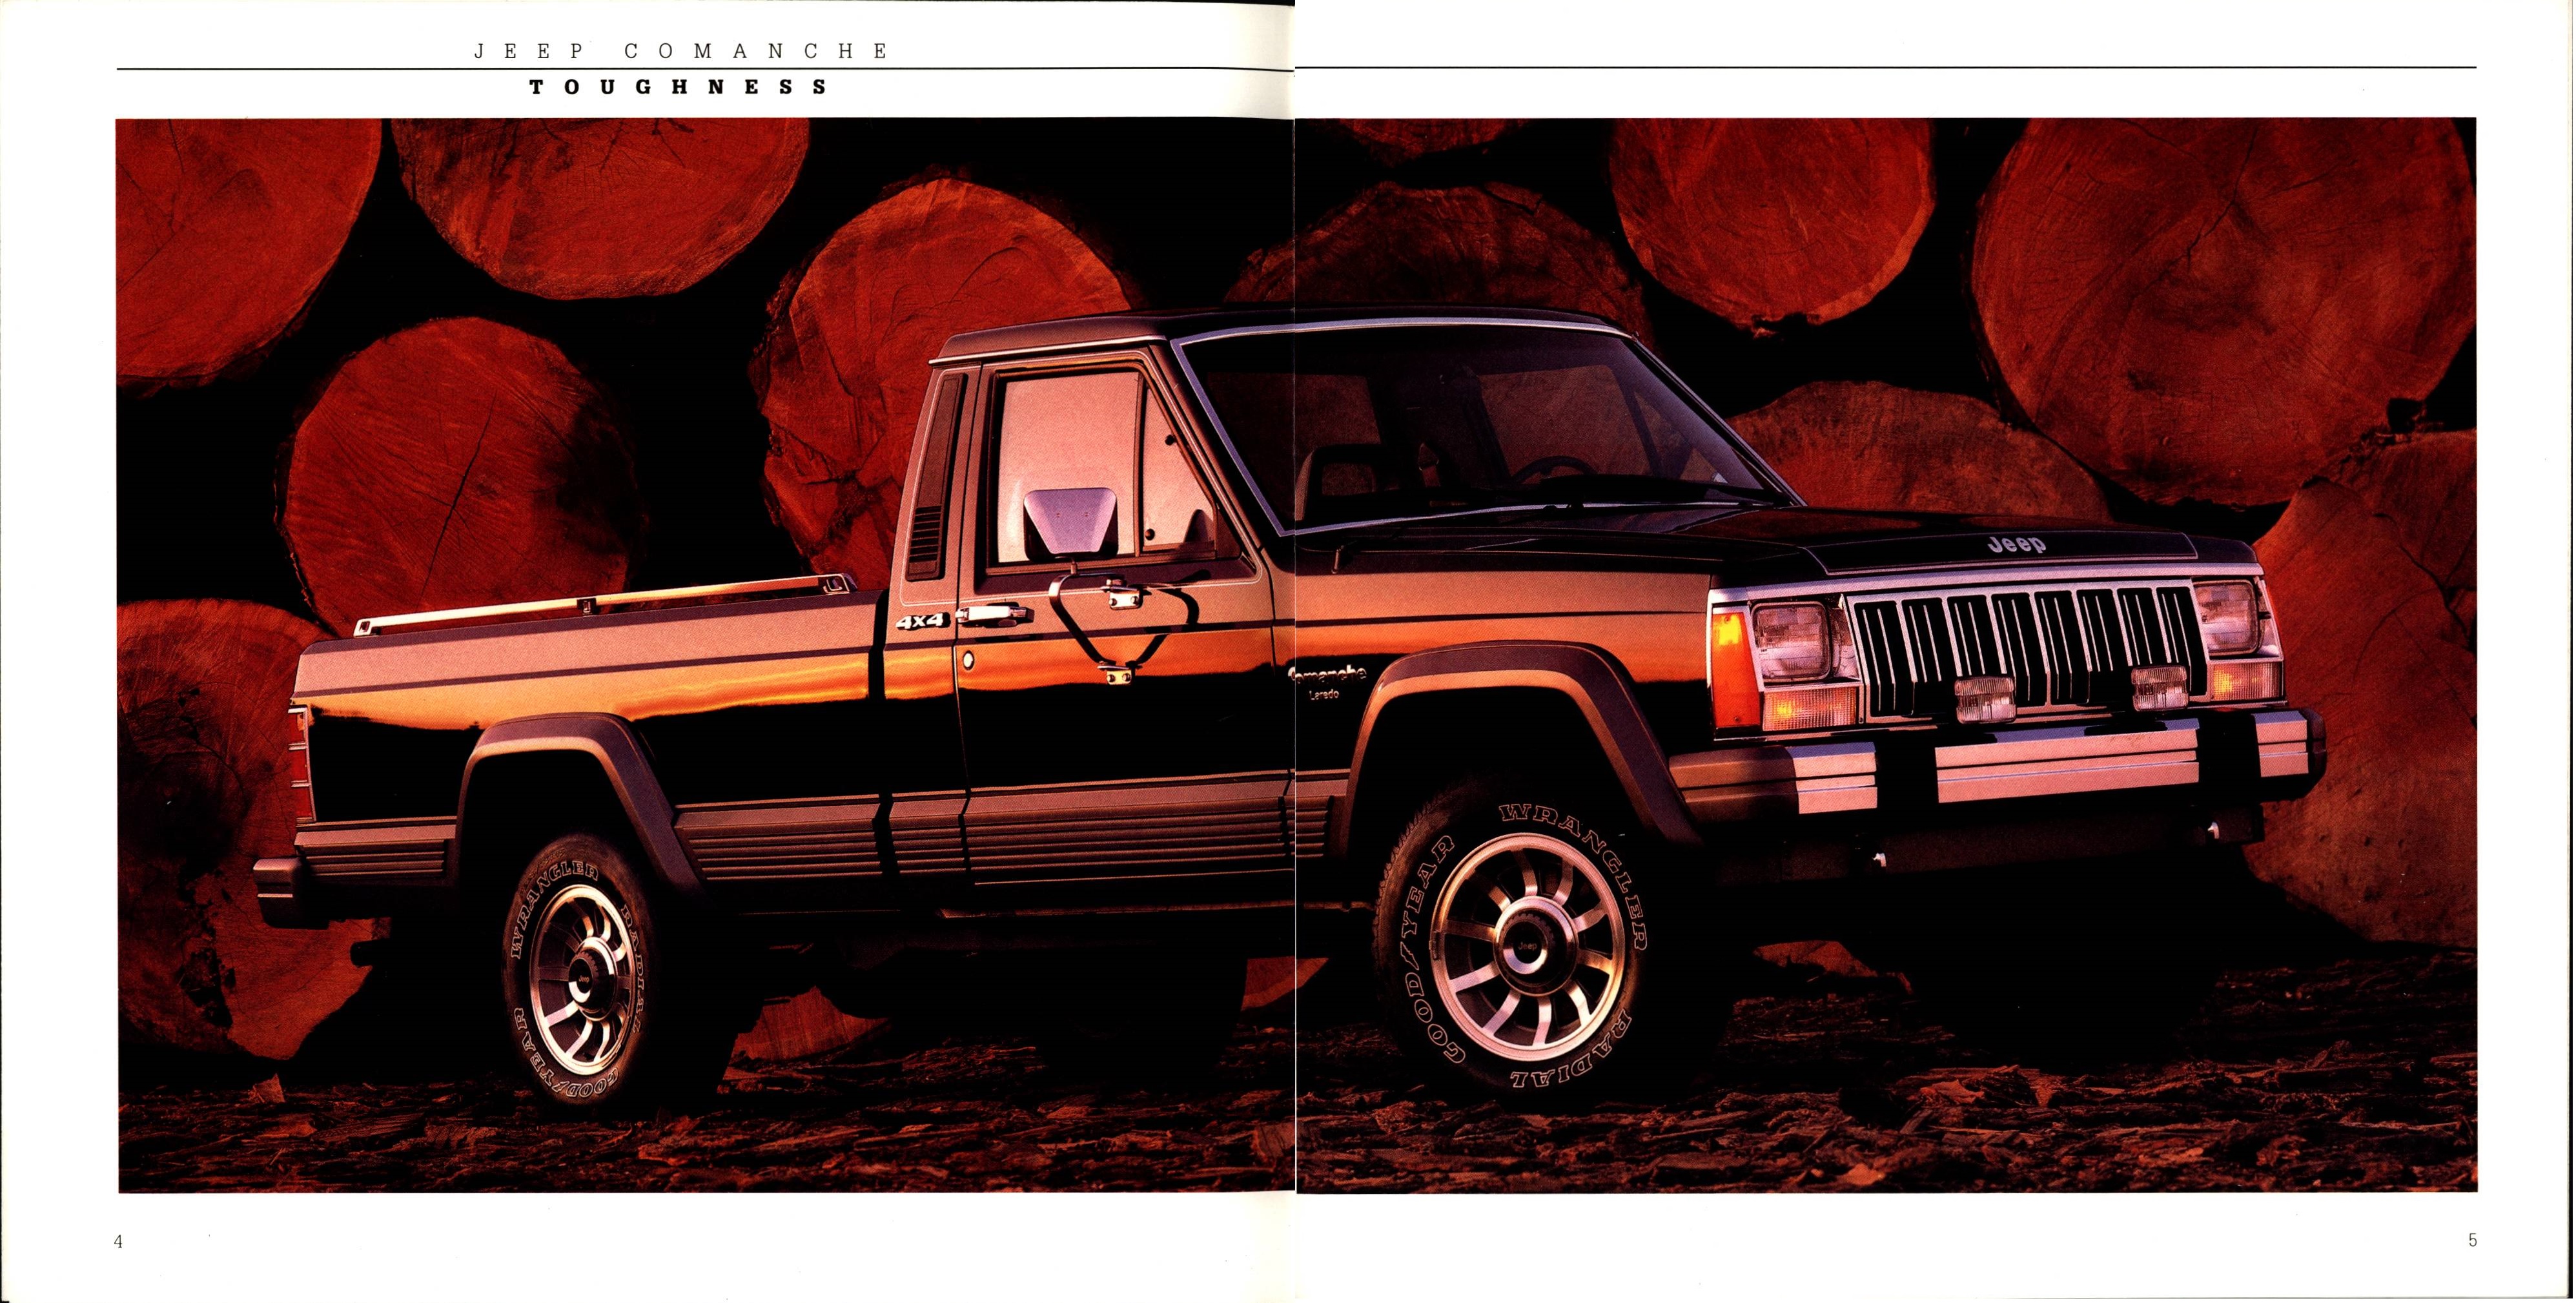 1988 Jeep Comanche Brochure 04-05